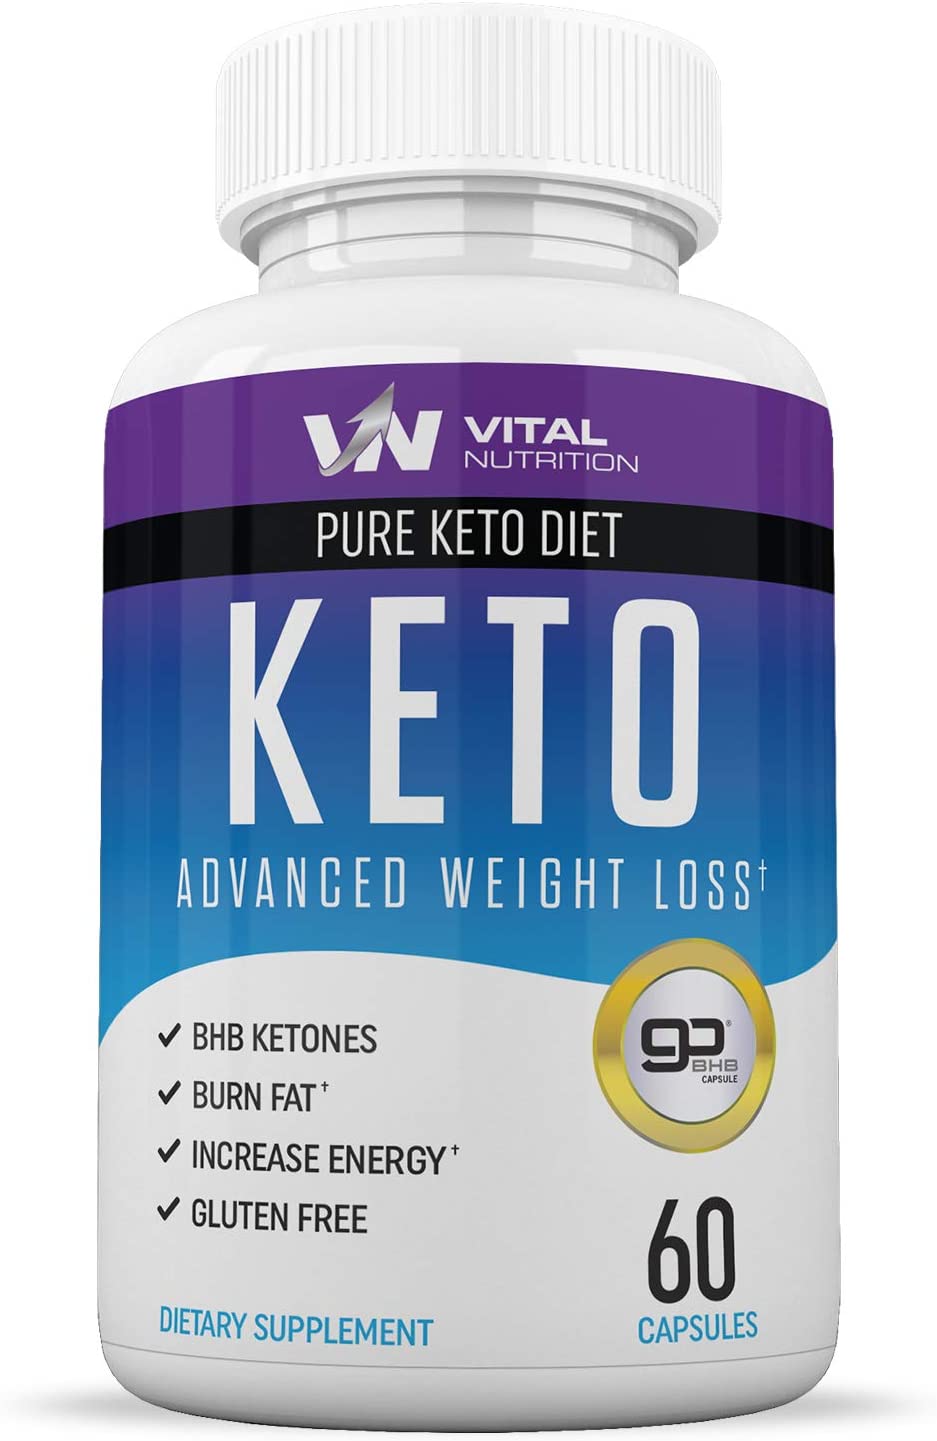 Keto pure diet - où acheter - en pharmacie - sur Amazon - site du fabricant - prix